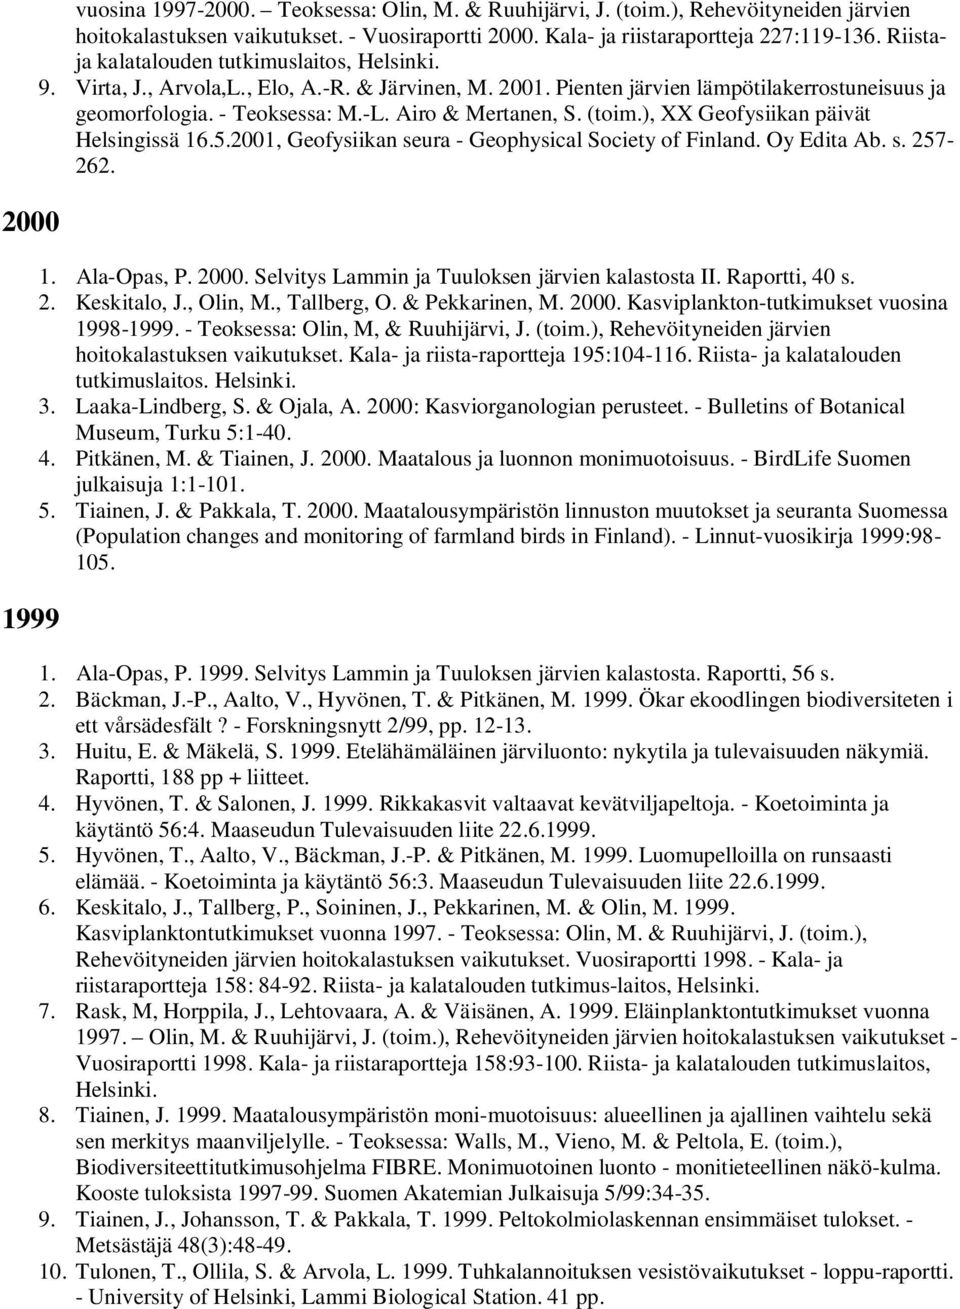 Airo & Mertanen, S. (toim.), XX Geofysiikan päivät Helsingissä 16.5.2001, Geofysiikan seura - Geophysical Society of Finland. Oy Edita Ab. s. 257-262. 1. Ala-Opas, P. 2000.